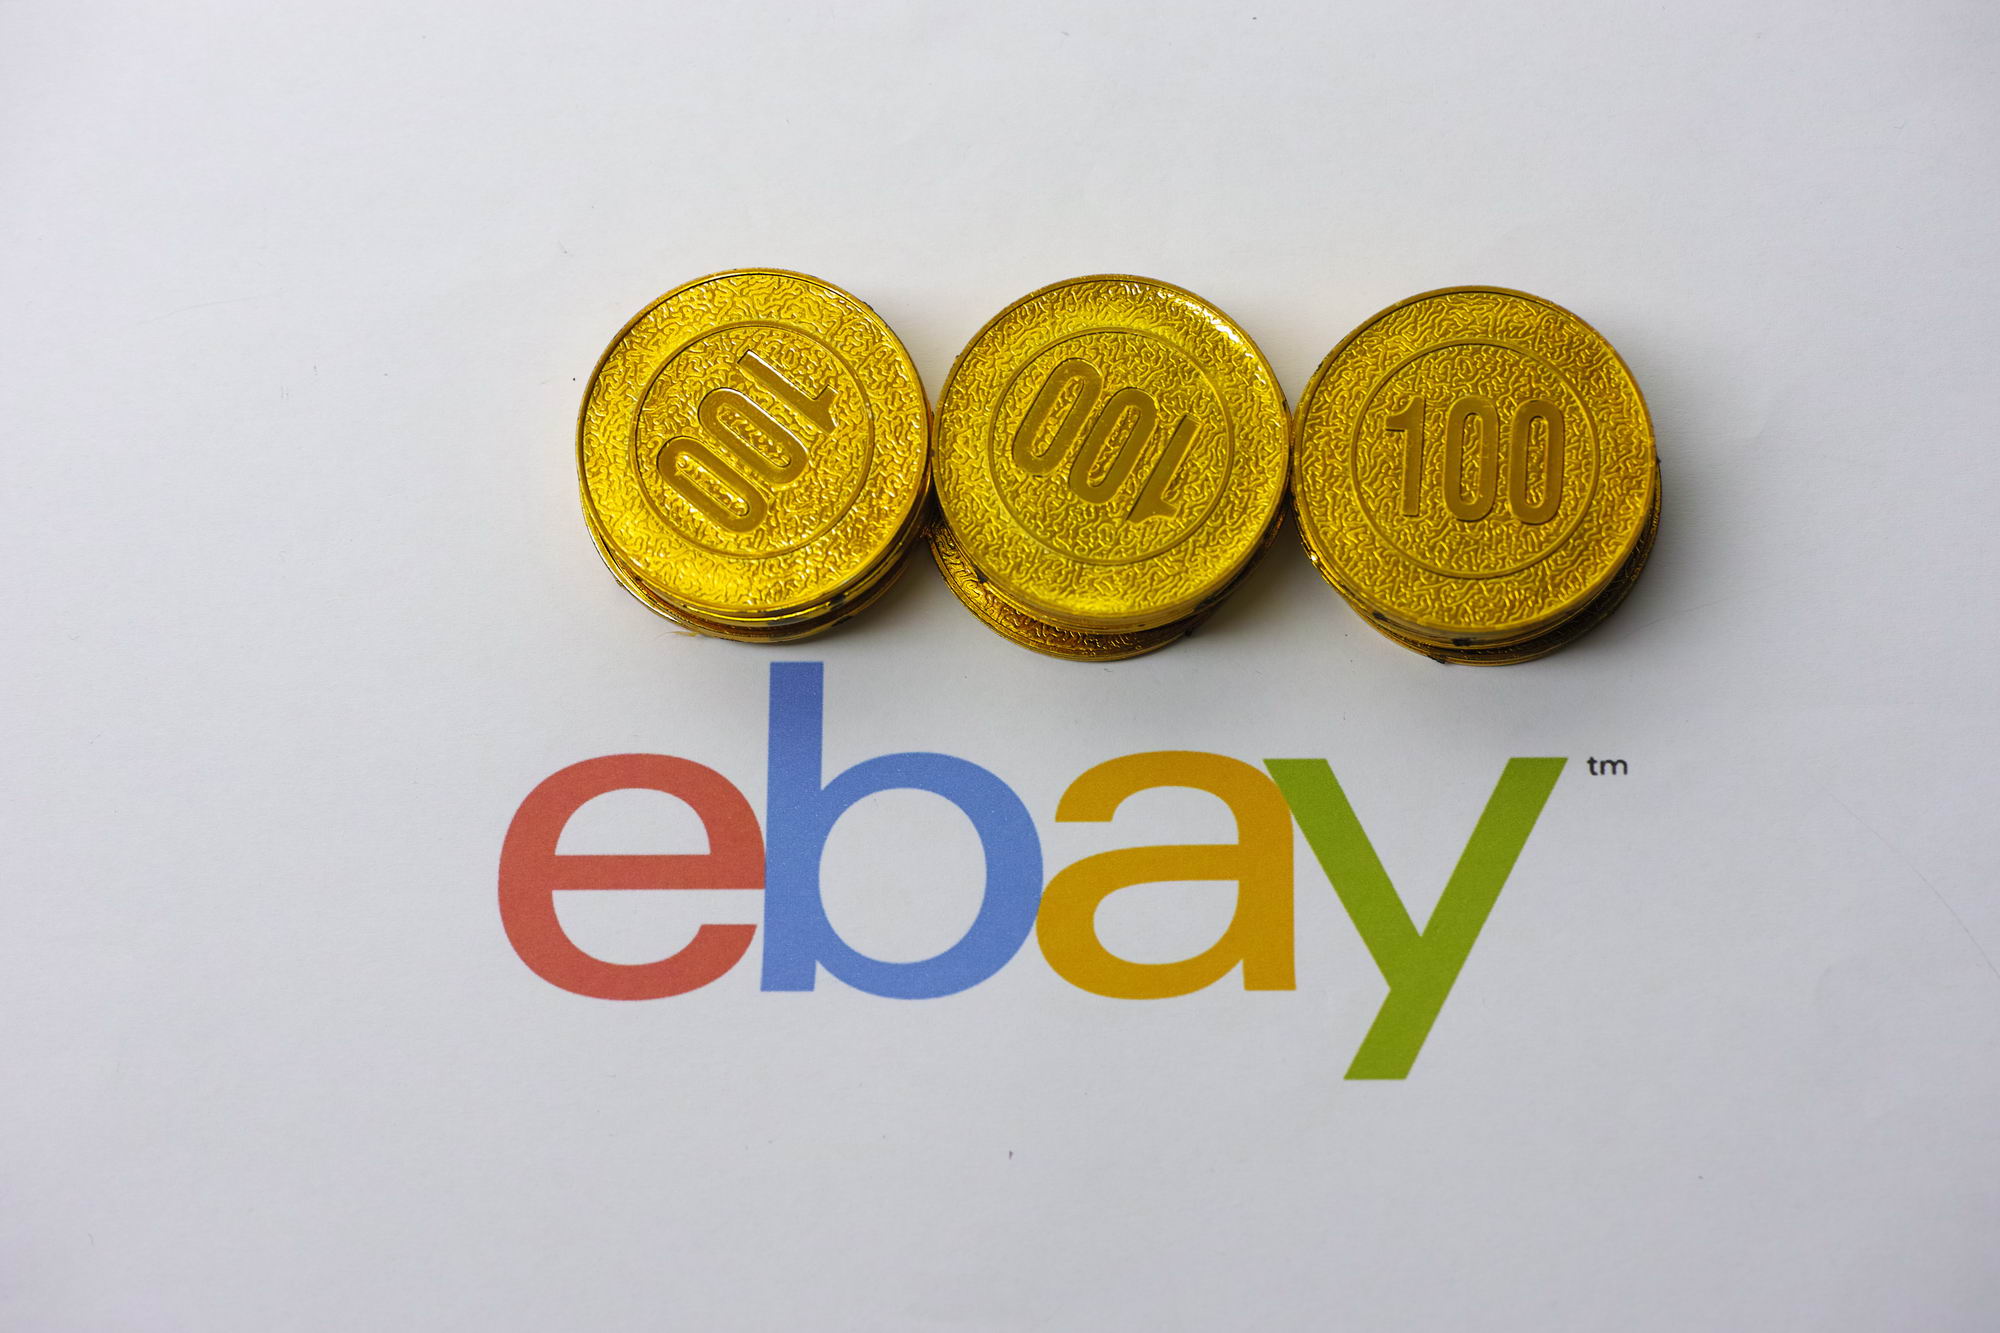 EBay英国站调整卖方处理退货要求的政策